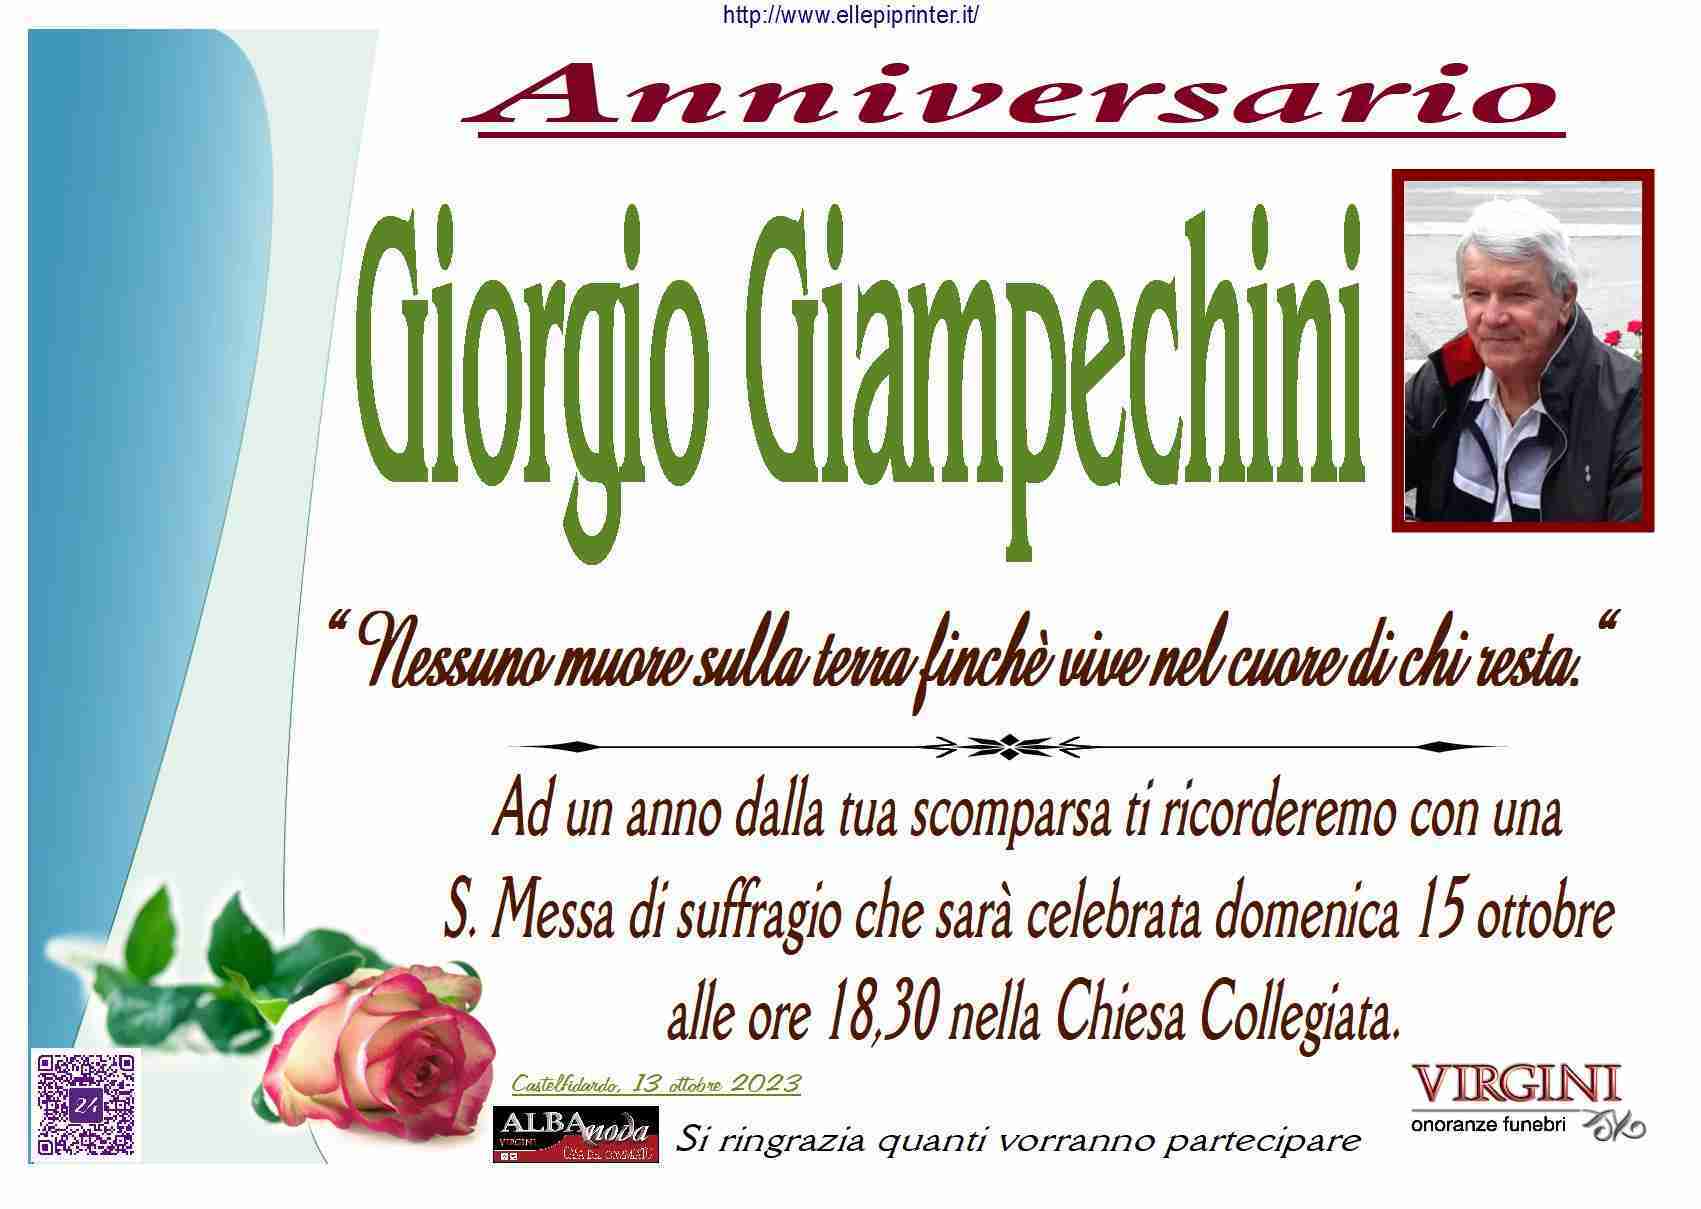 Giorgio Giampechini